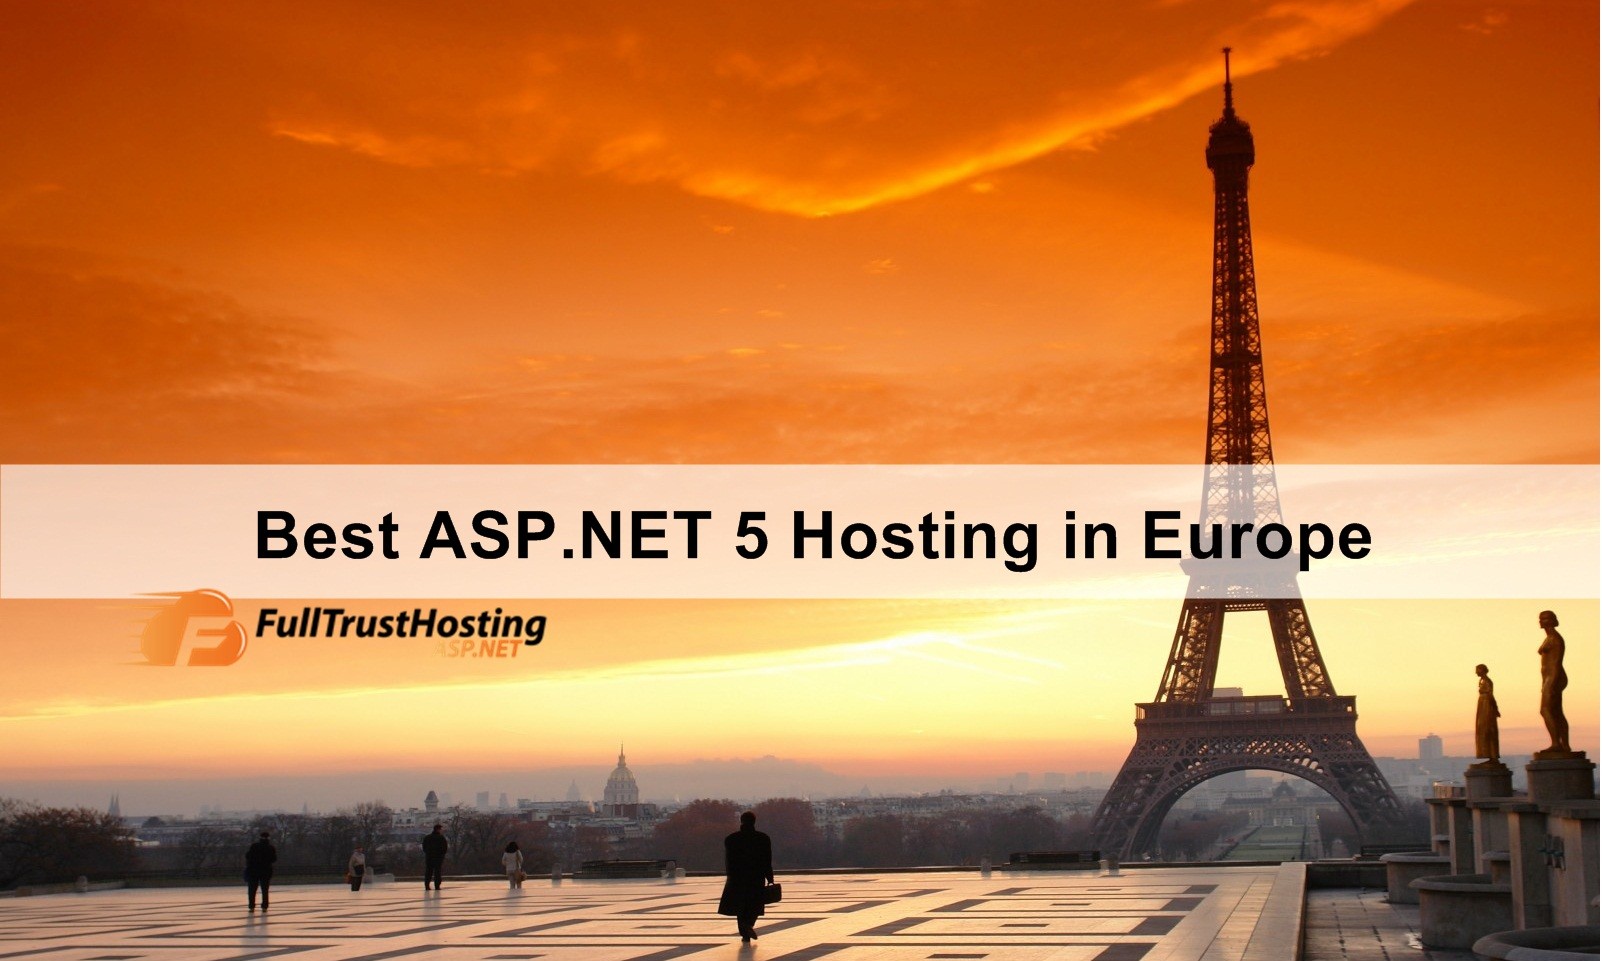 Best ASP.NET 5 Hosting in Europe